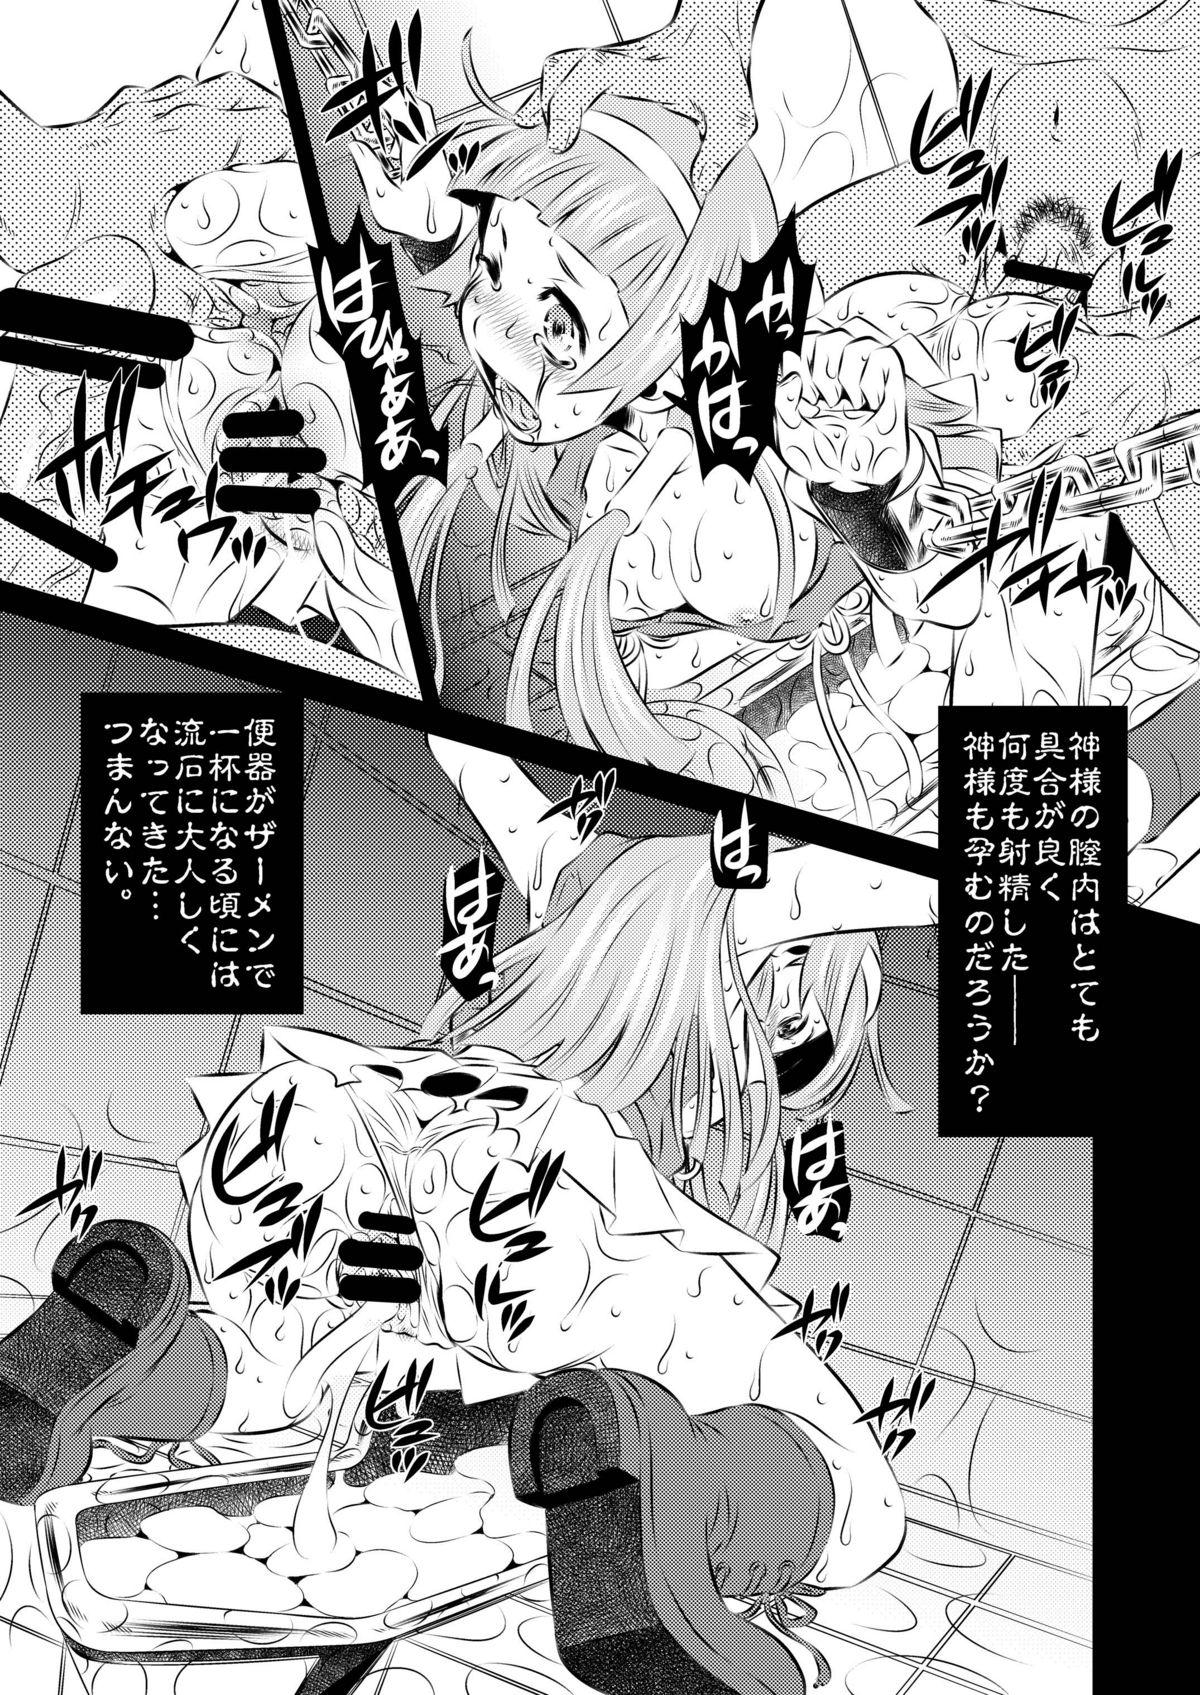 Harcore Goumon Kan Kannagi hen - Kannagi Doggy Style - Page 5